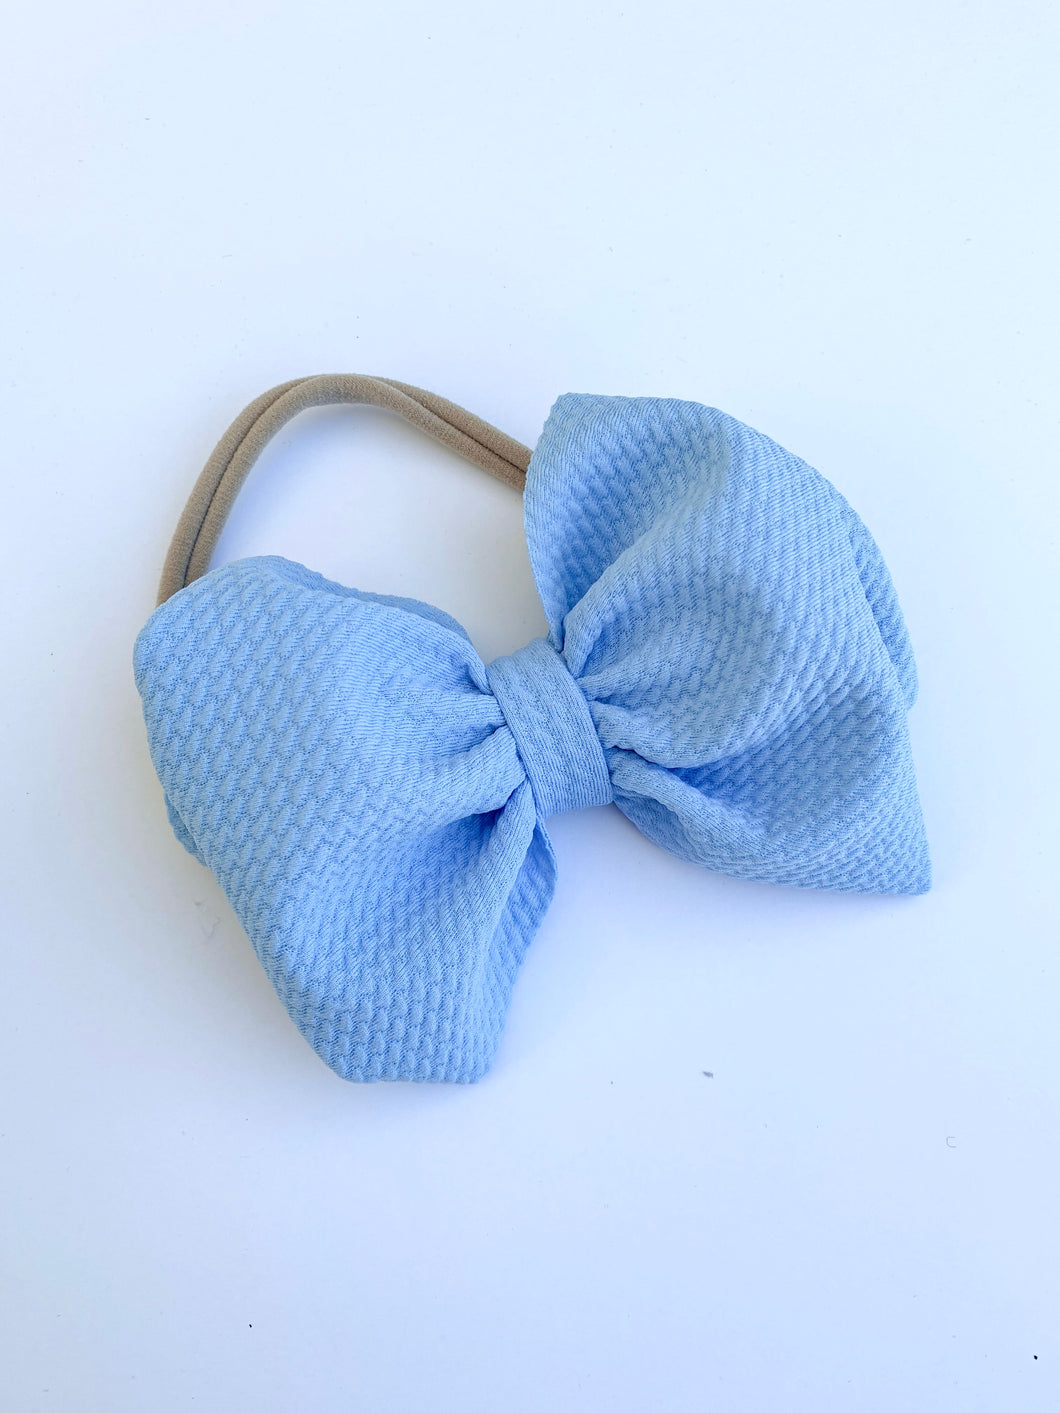 Baby Blue Nylon Bow